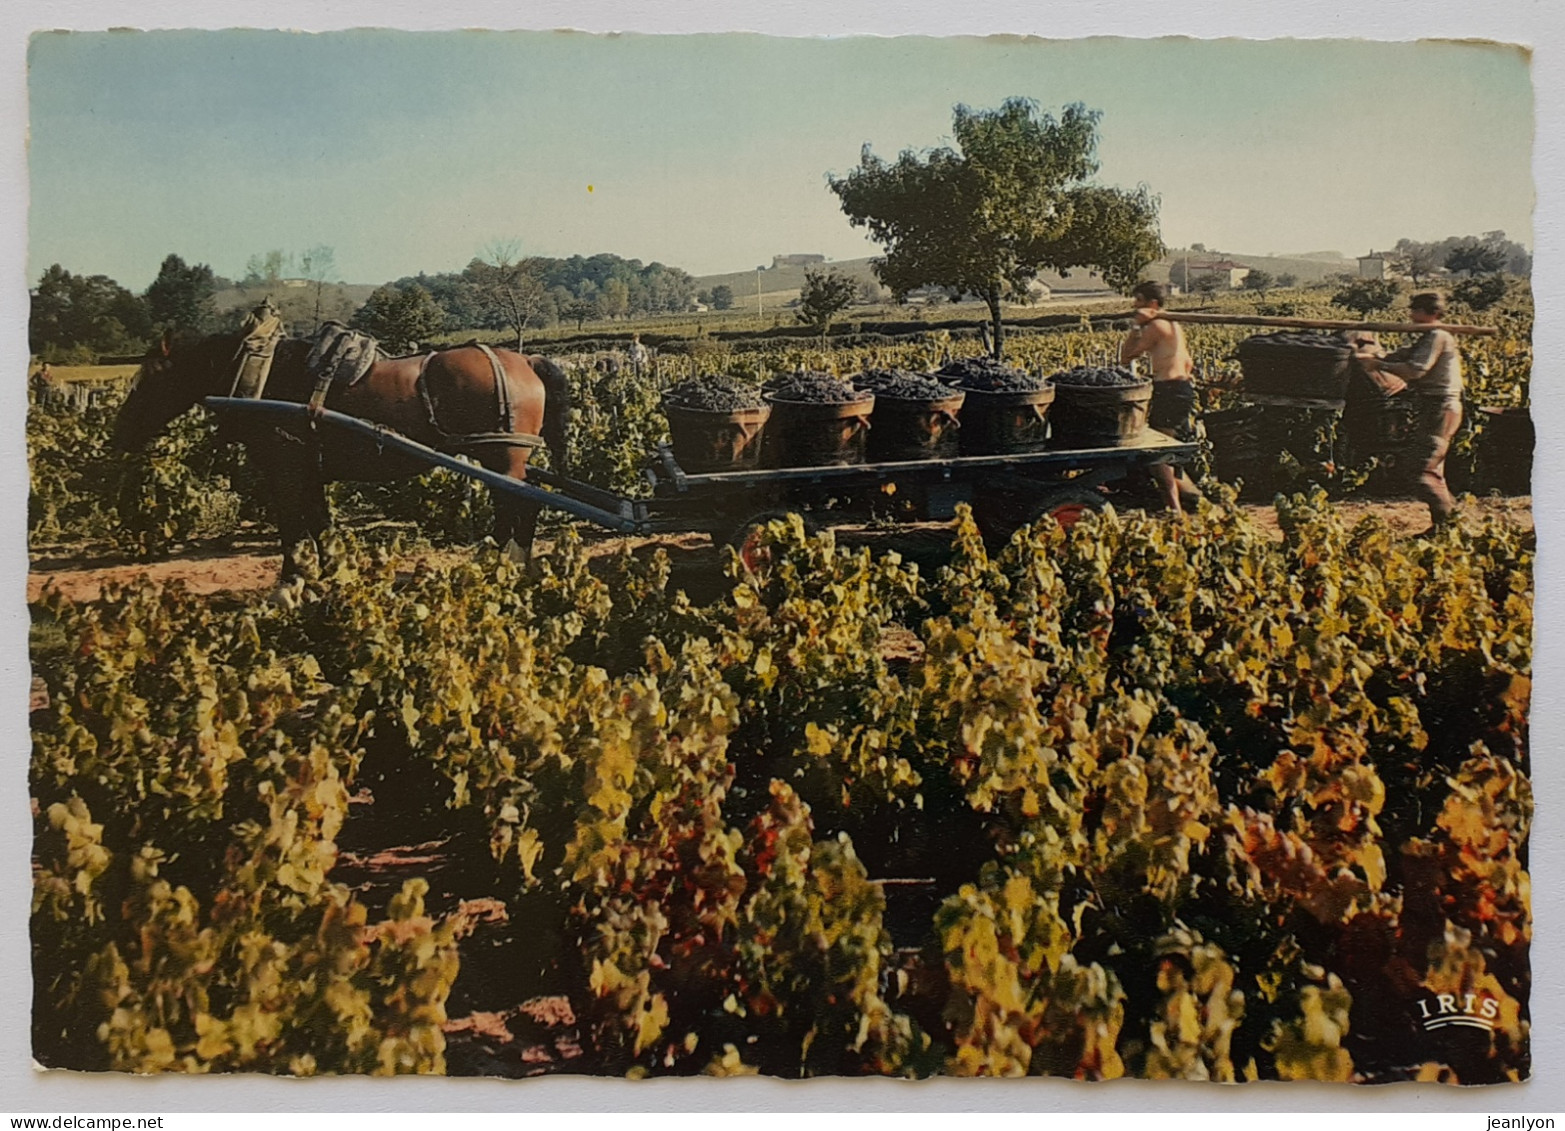 BEAUJOLAIS / VENDANGES - Vigne / Vin - Porteur De Bennes - Attelage à Cheval - Landbouwers